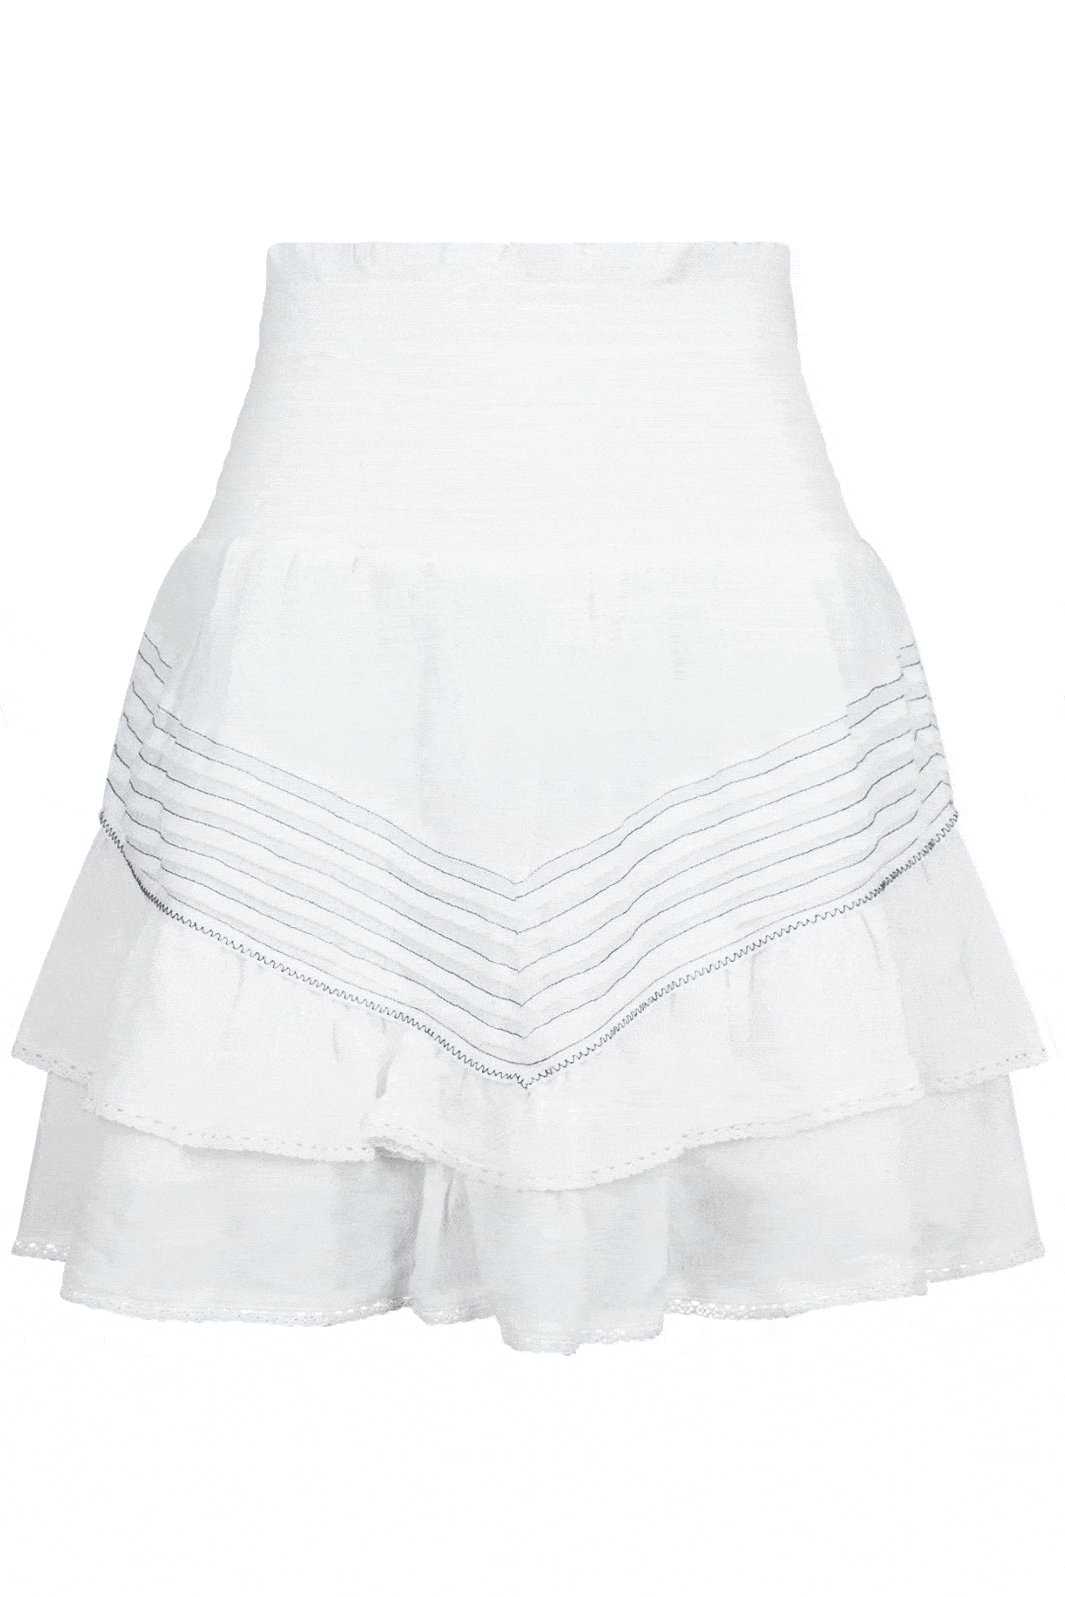 Neo Noir - Tatin Skirt - Off White Nederdele 